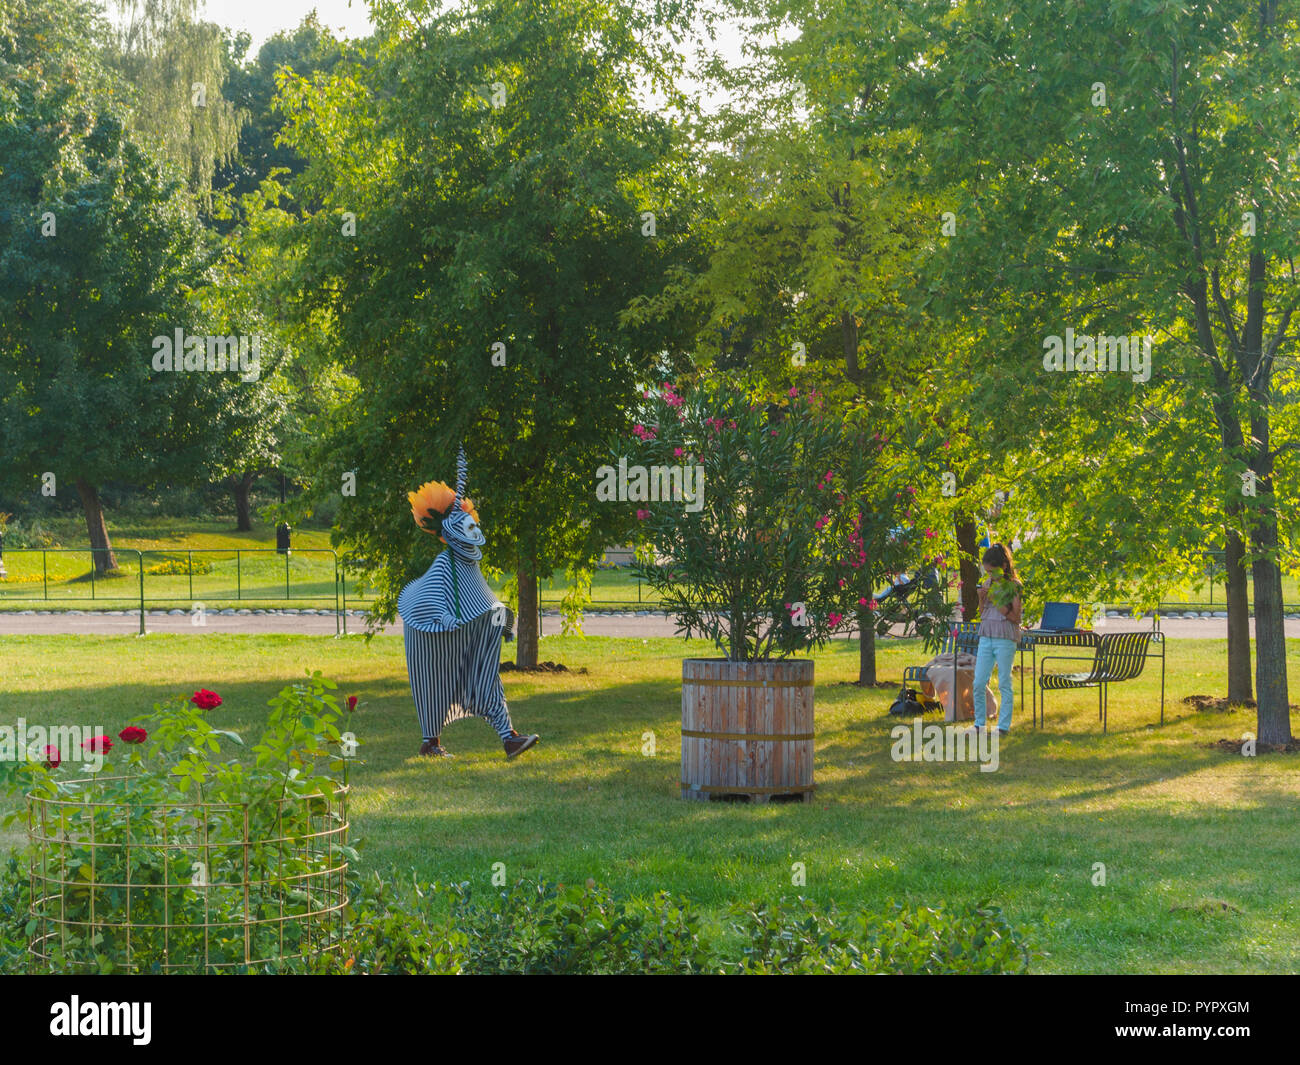 Moskau, Russland - 31. AUGUST 2018: Landschaftsarchitektur und Garten Festival in Tsaritsyno Park. Stockfoto